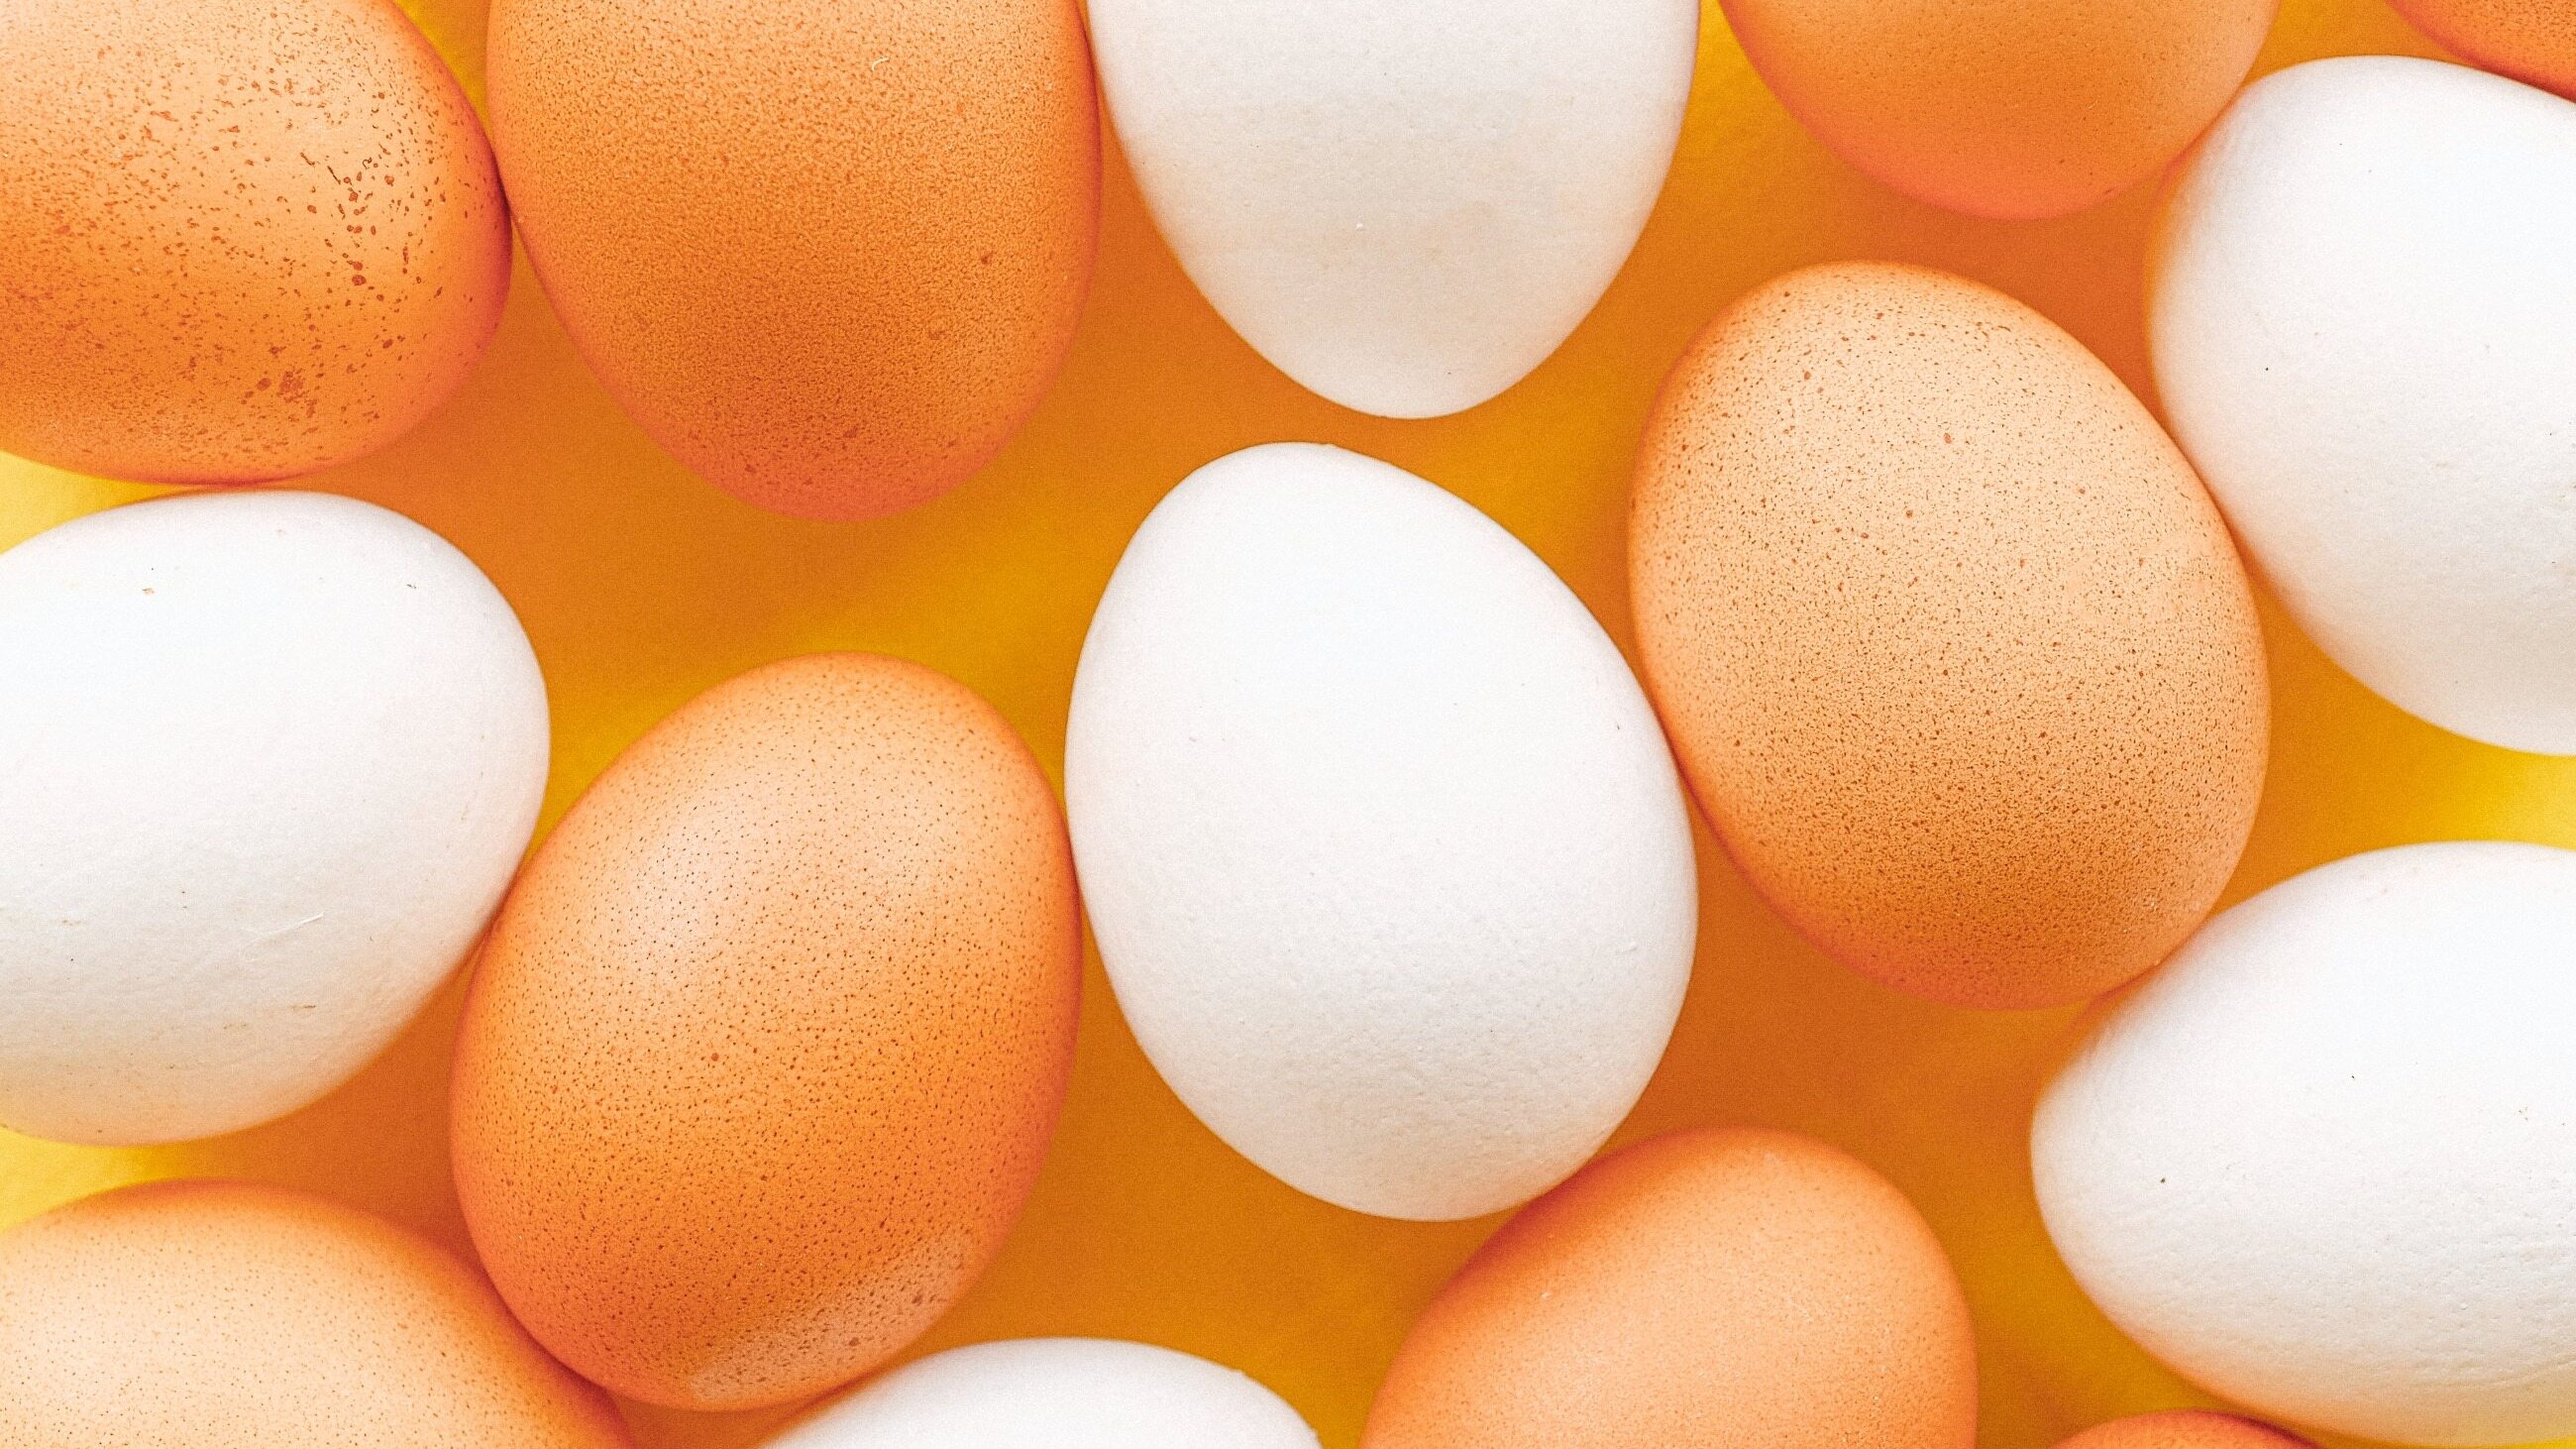 Ile jajek można zjeść w święta? Dietetyk odpowiada